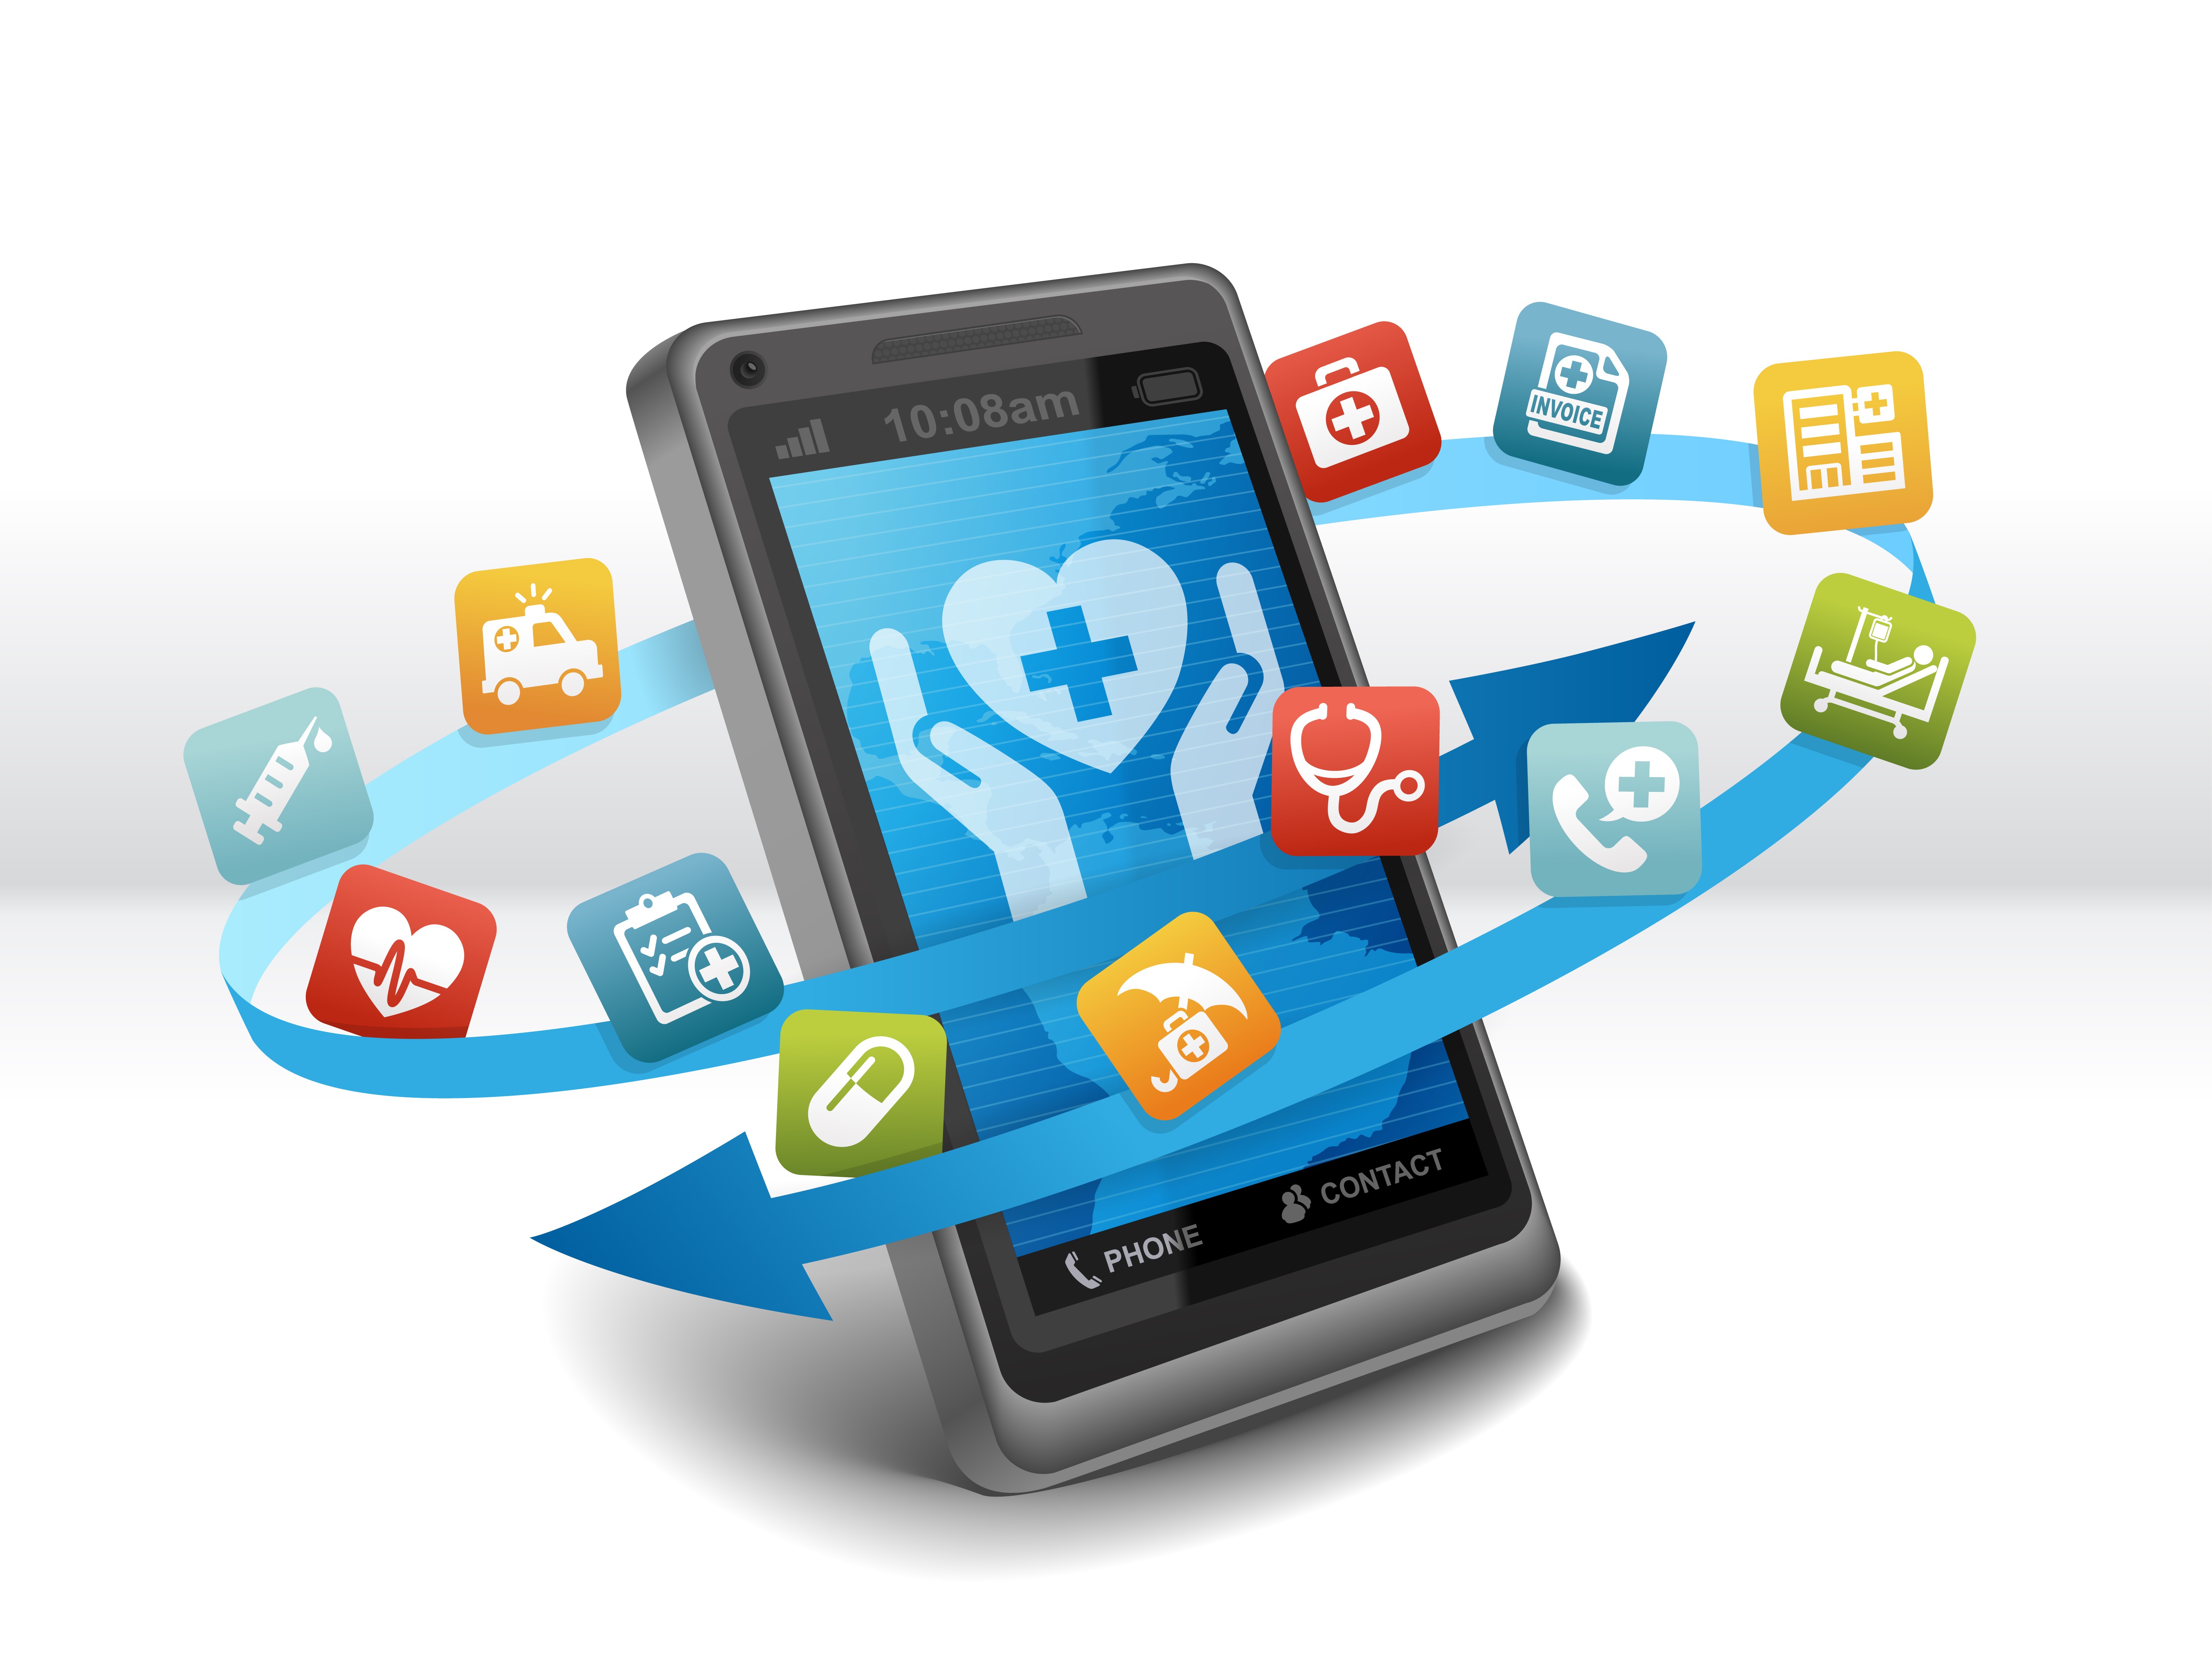 Gesundheits-Apps – Worauf ist zu achten?